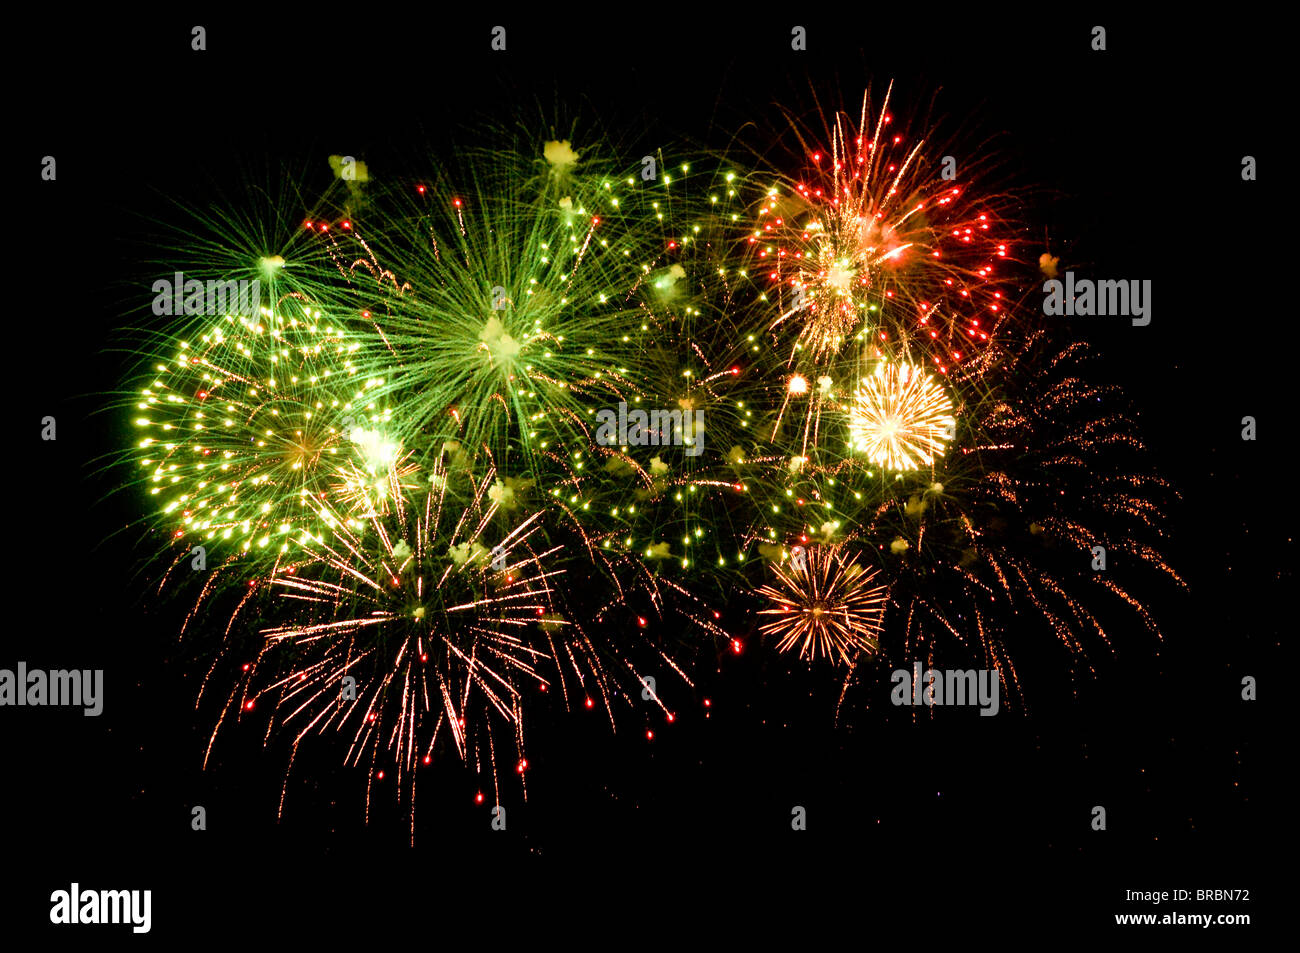 Mortiers De Feux D'artifice Image stock - Image du fireworks, canon:  25706531